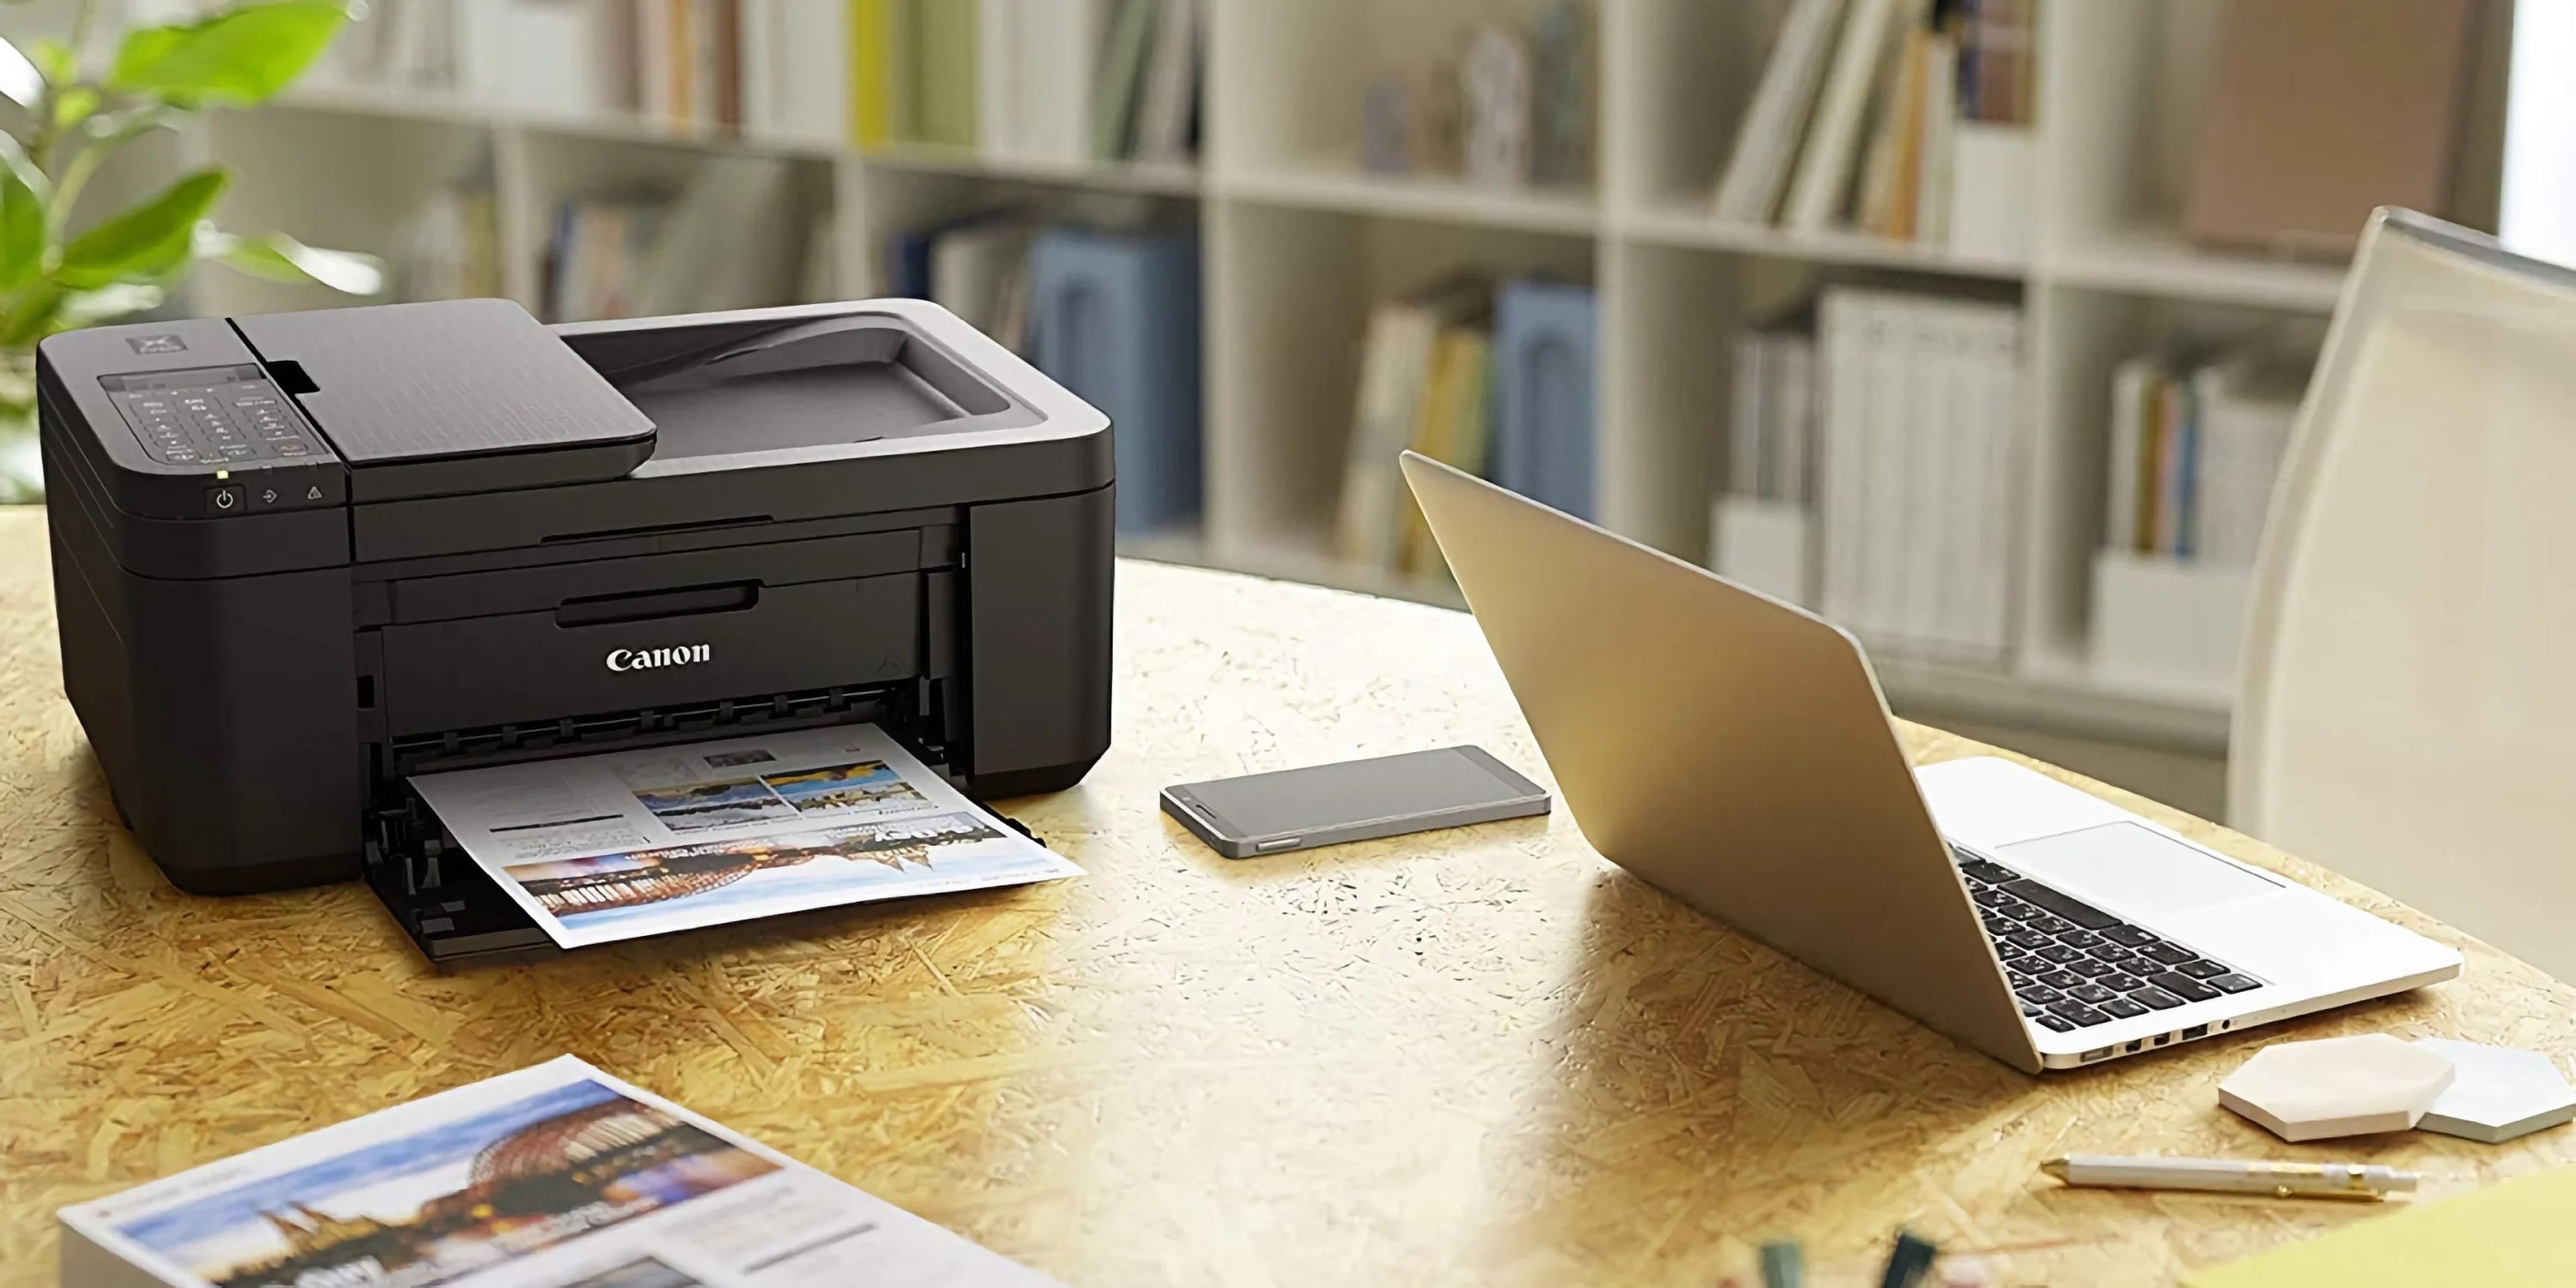 Estas 6 mejores impresoras baratas que puedes comprar en 2022 | Computer Hoy